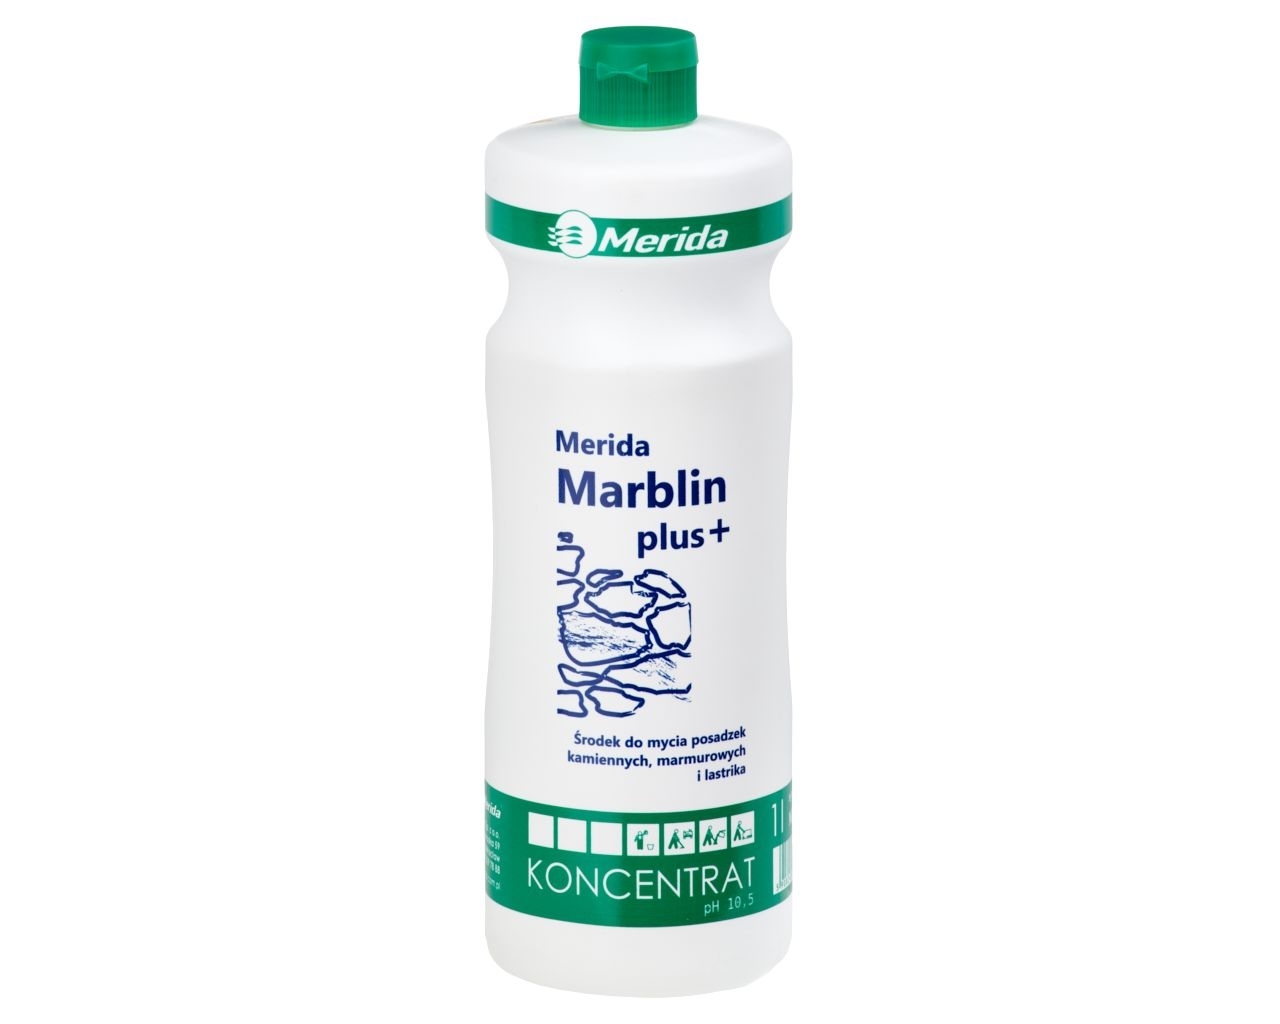 MERIDA MERIDA MARBLIN PLUS+ Środek do mycia podłóg z kamienia naturalnego i sztucznego, butelka 1 l